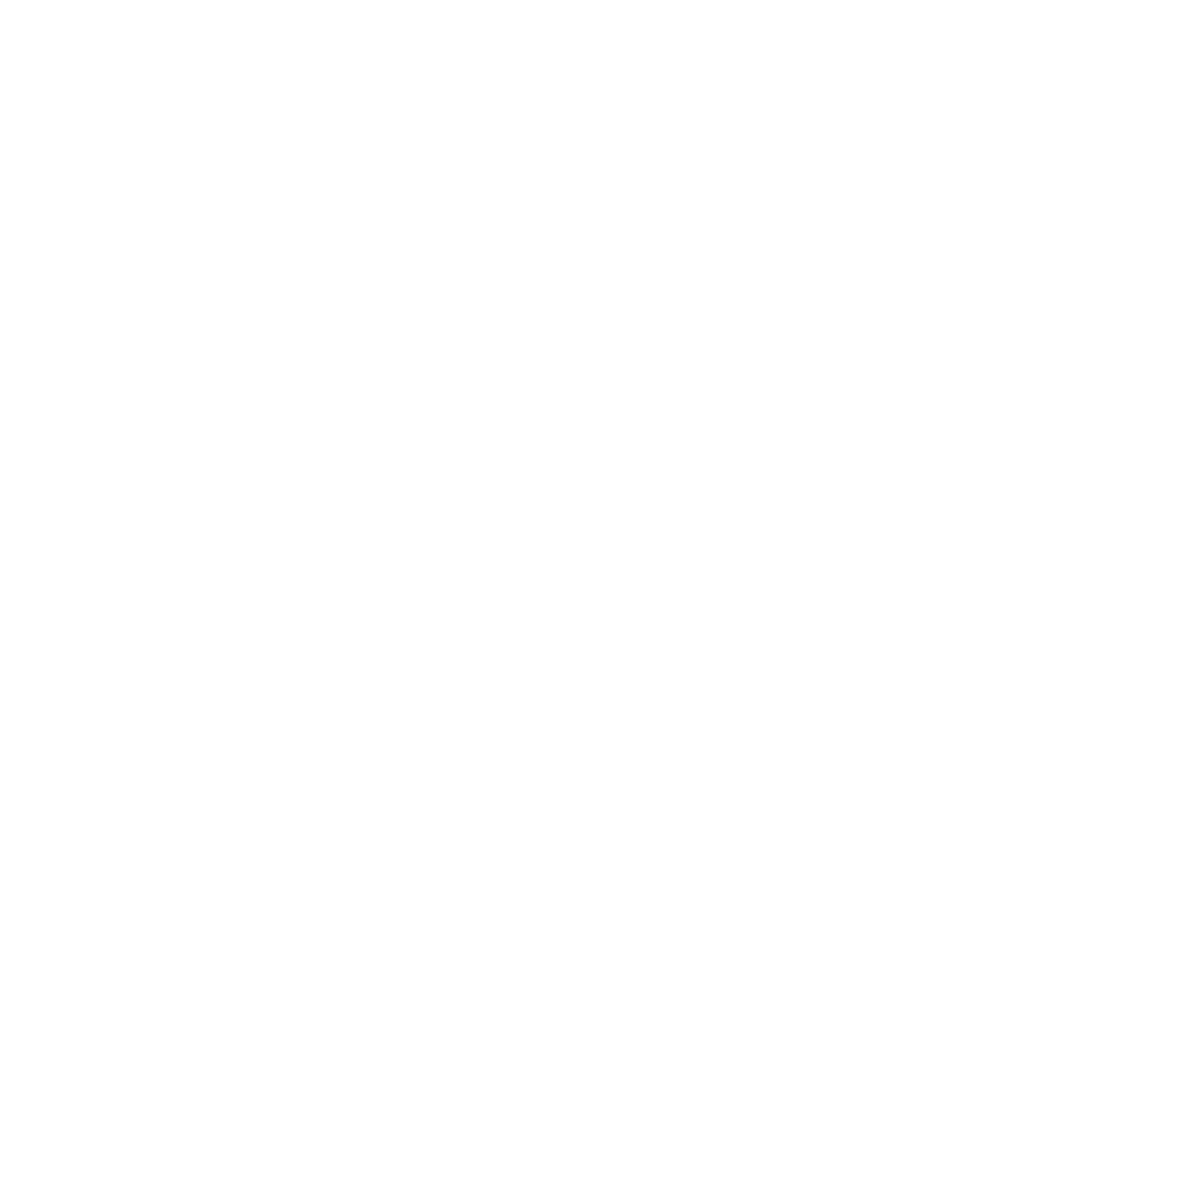 Brighton Girls PTFA